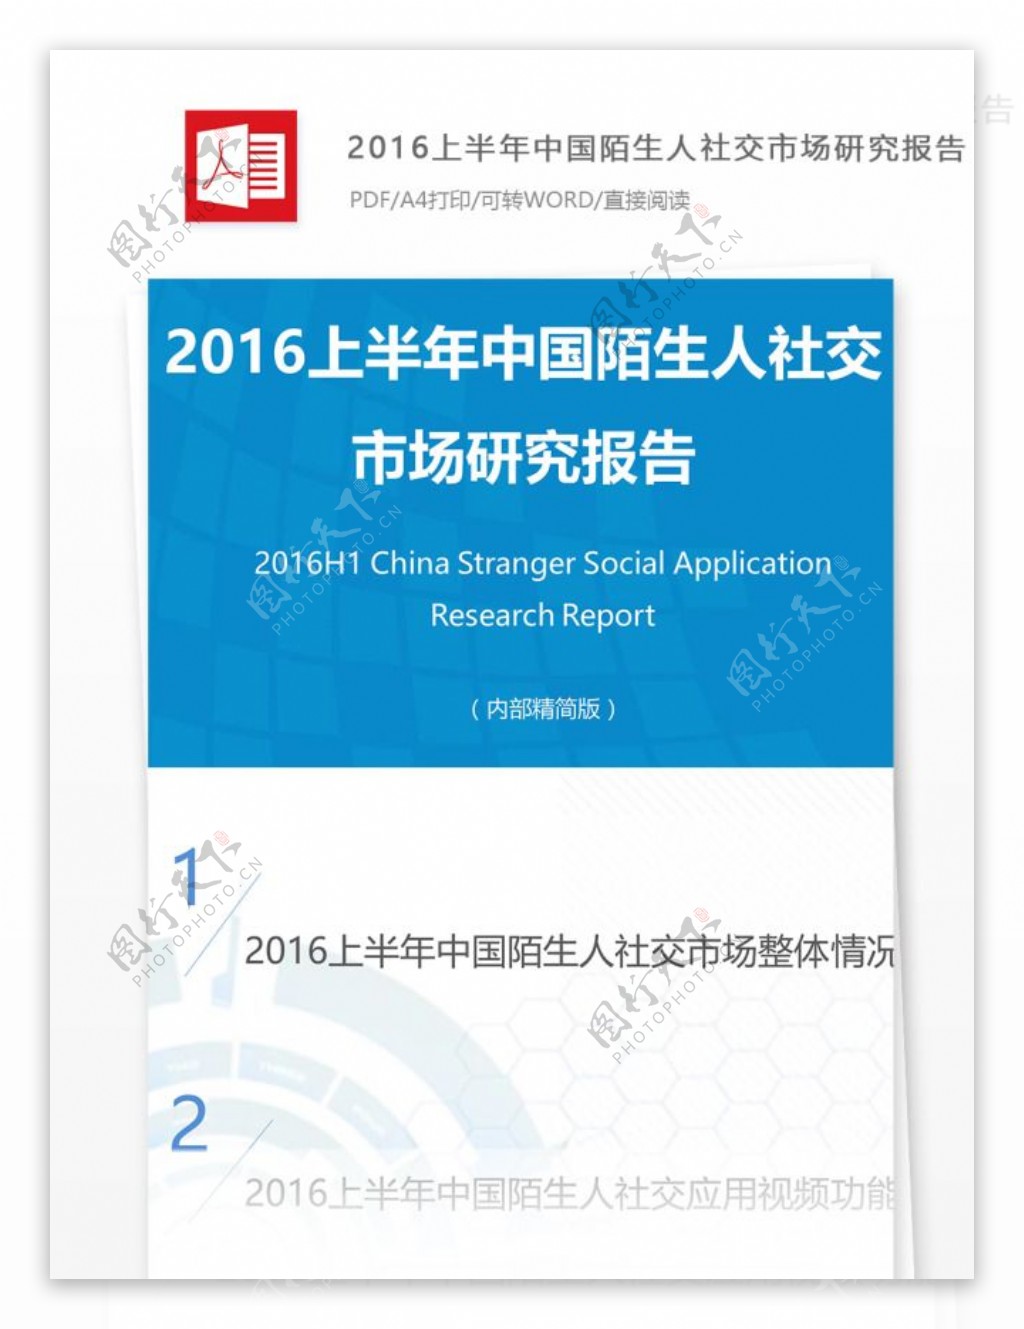 2016上半年中国陌生人社交市场研究报告